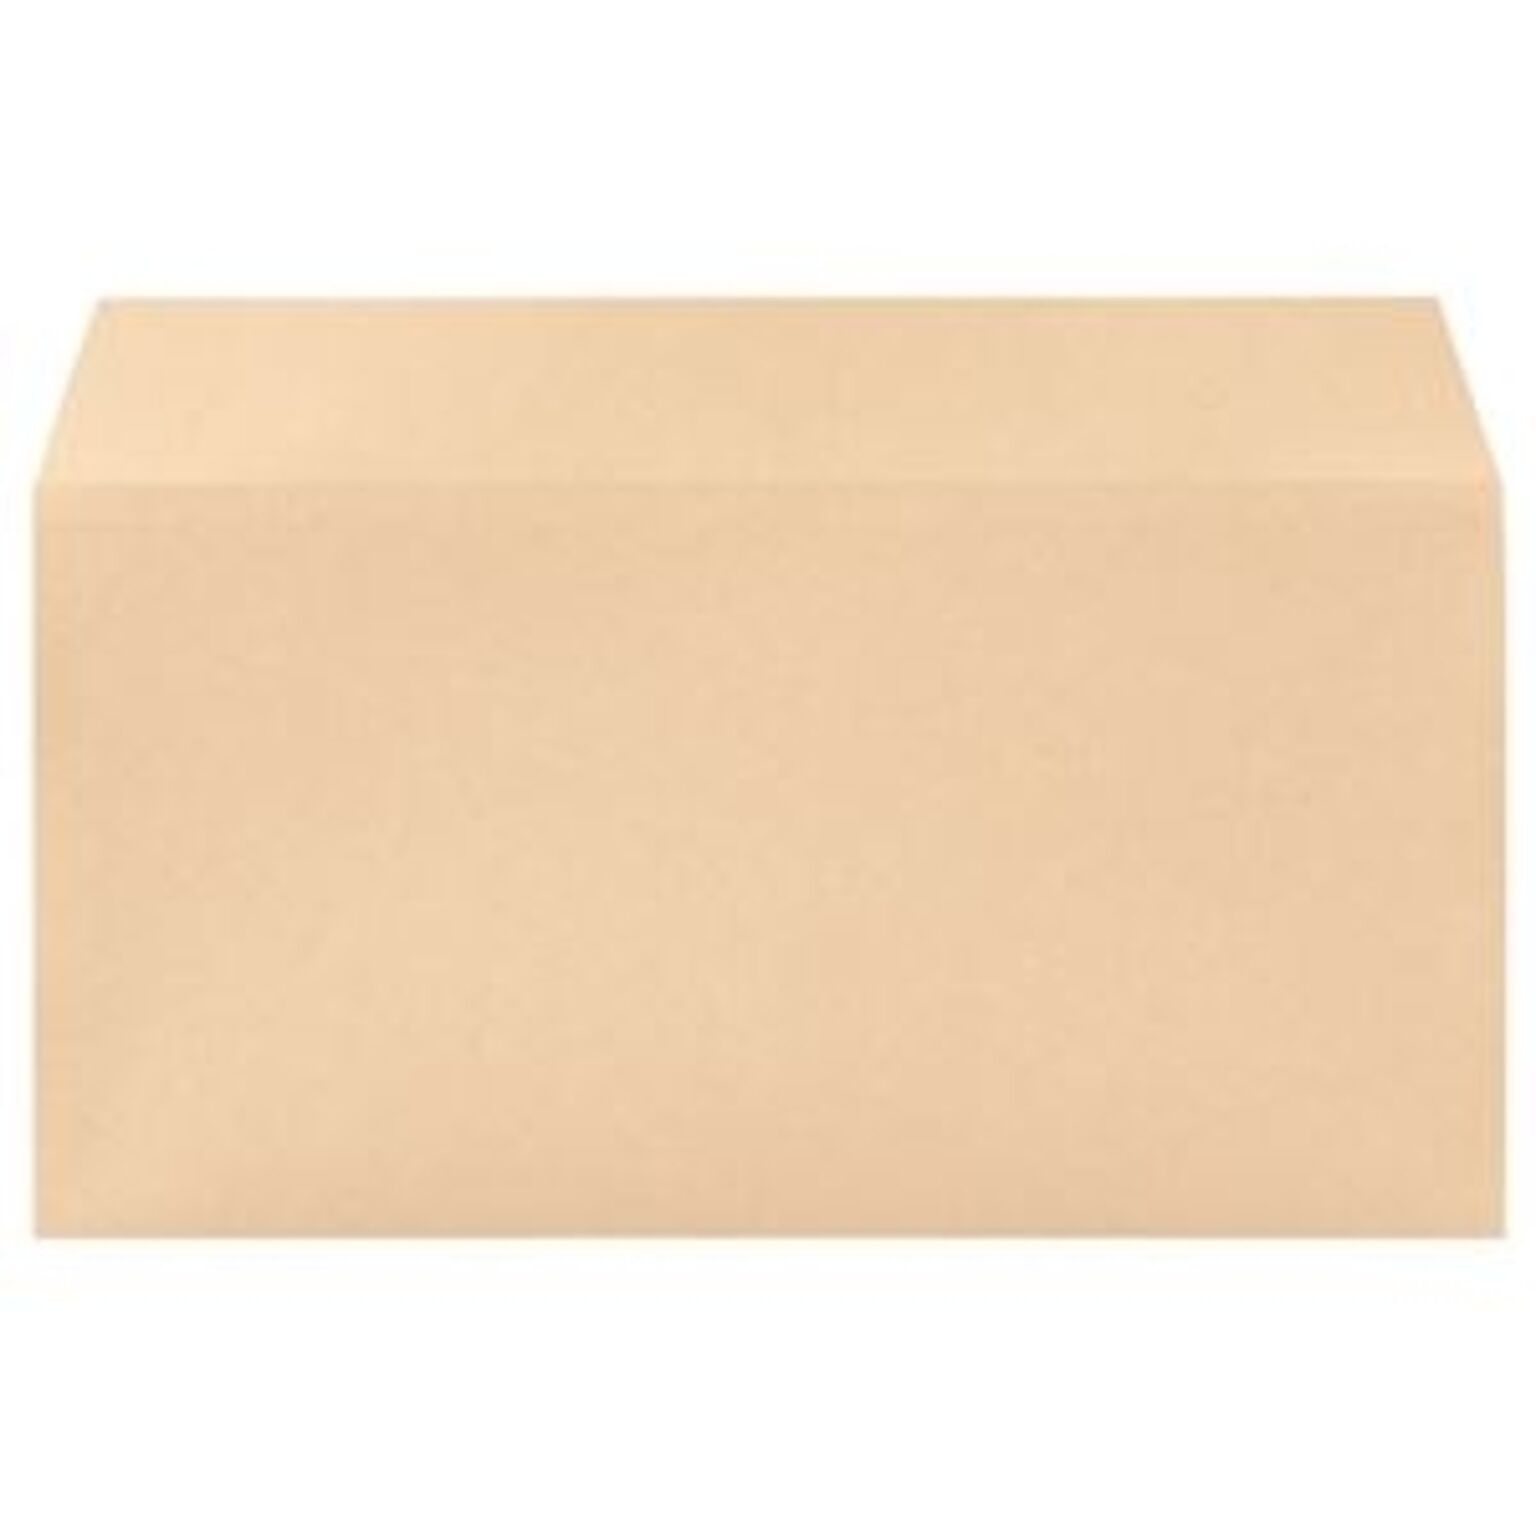 (まとめ) 寿堂 プリンター専用封筒 横型長3 85g/m2 クラフト 31902 1パック(50枚) 【×10セット】